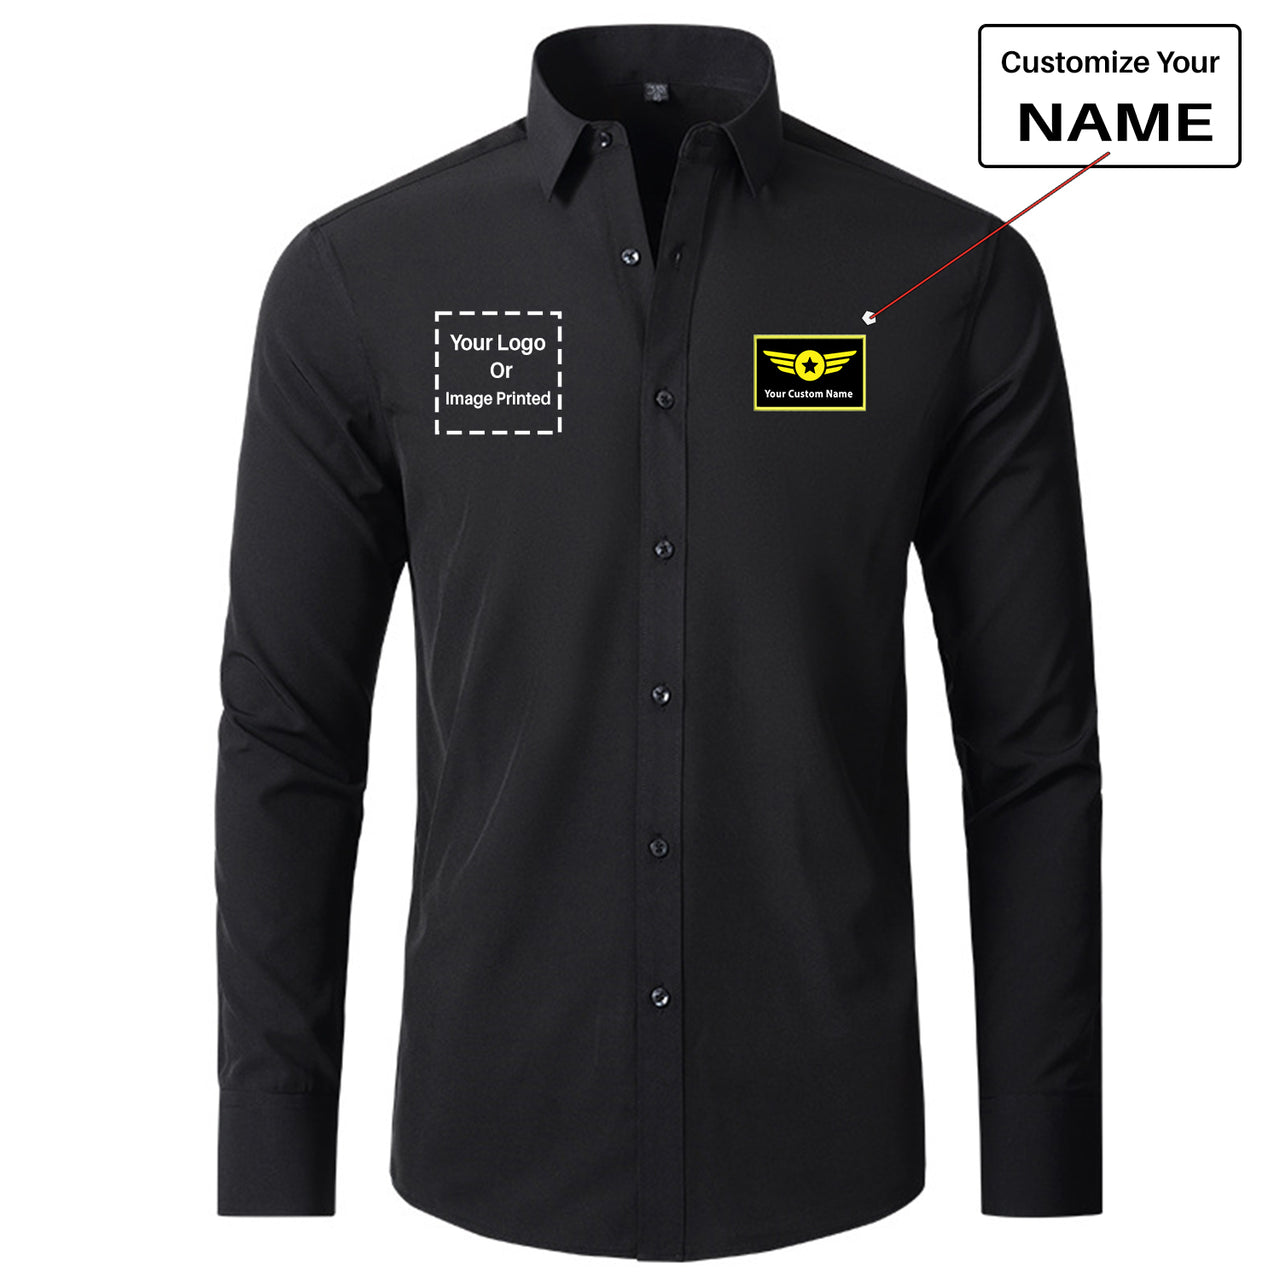 Custom Name & LOGO Designed Long Sleeve Shirts